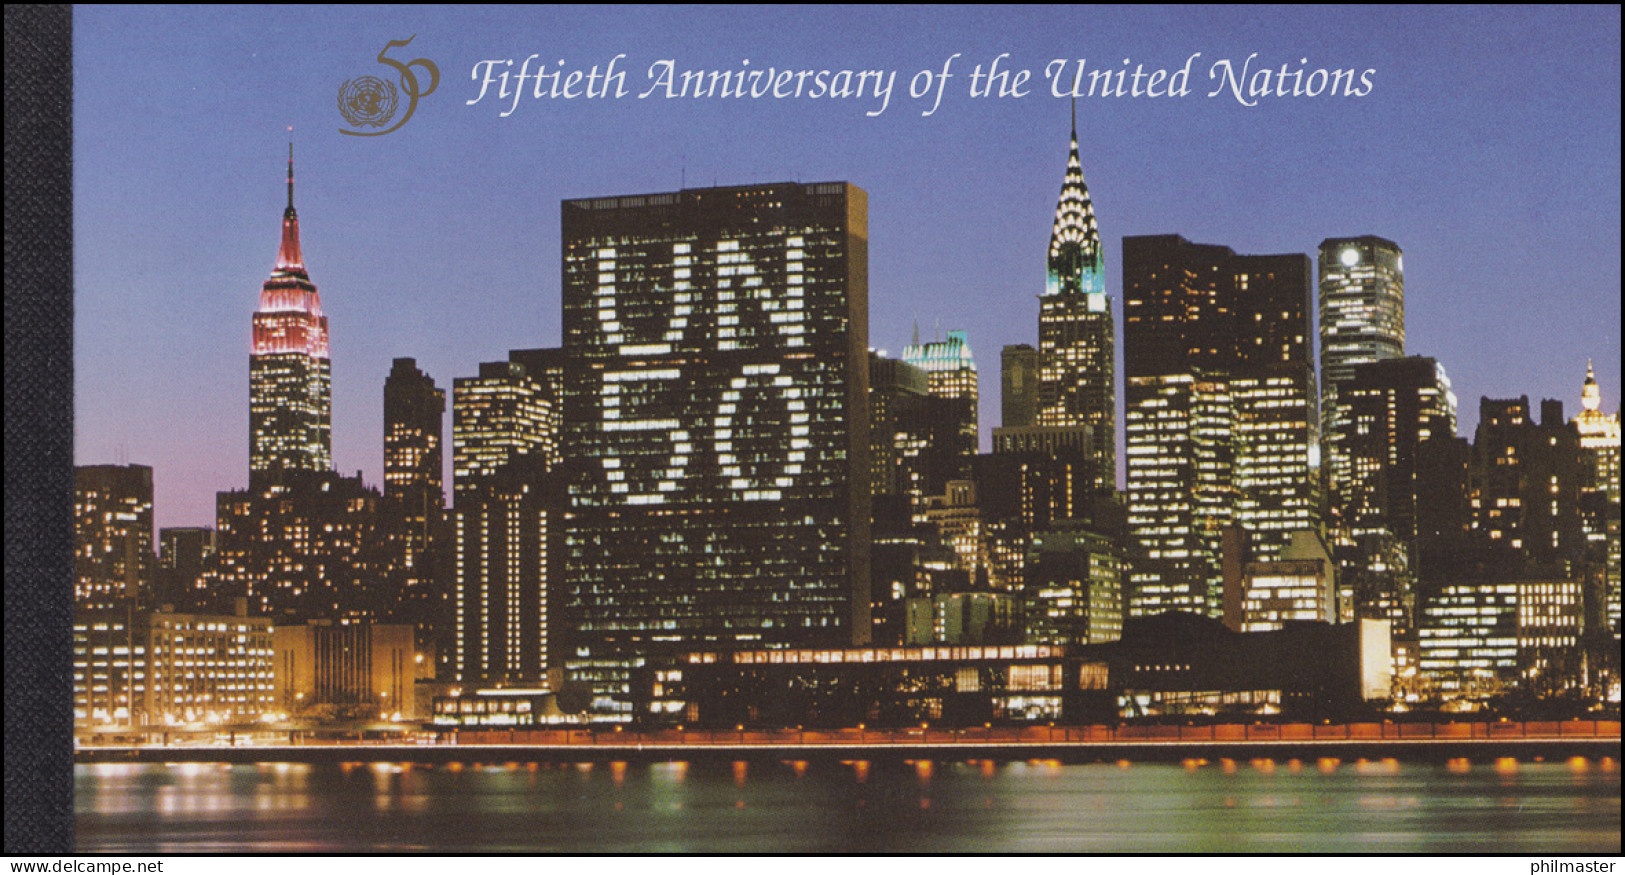 UNO New York Markenheftchen 1 Jubiläum 50 Vereinte Nationen 1995, ** - Booklets